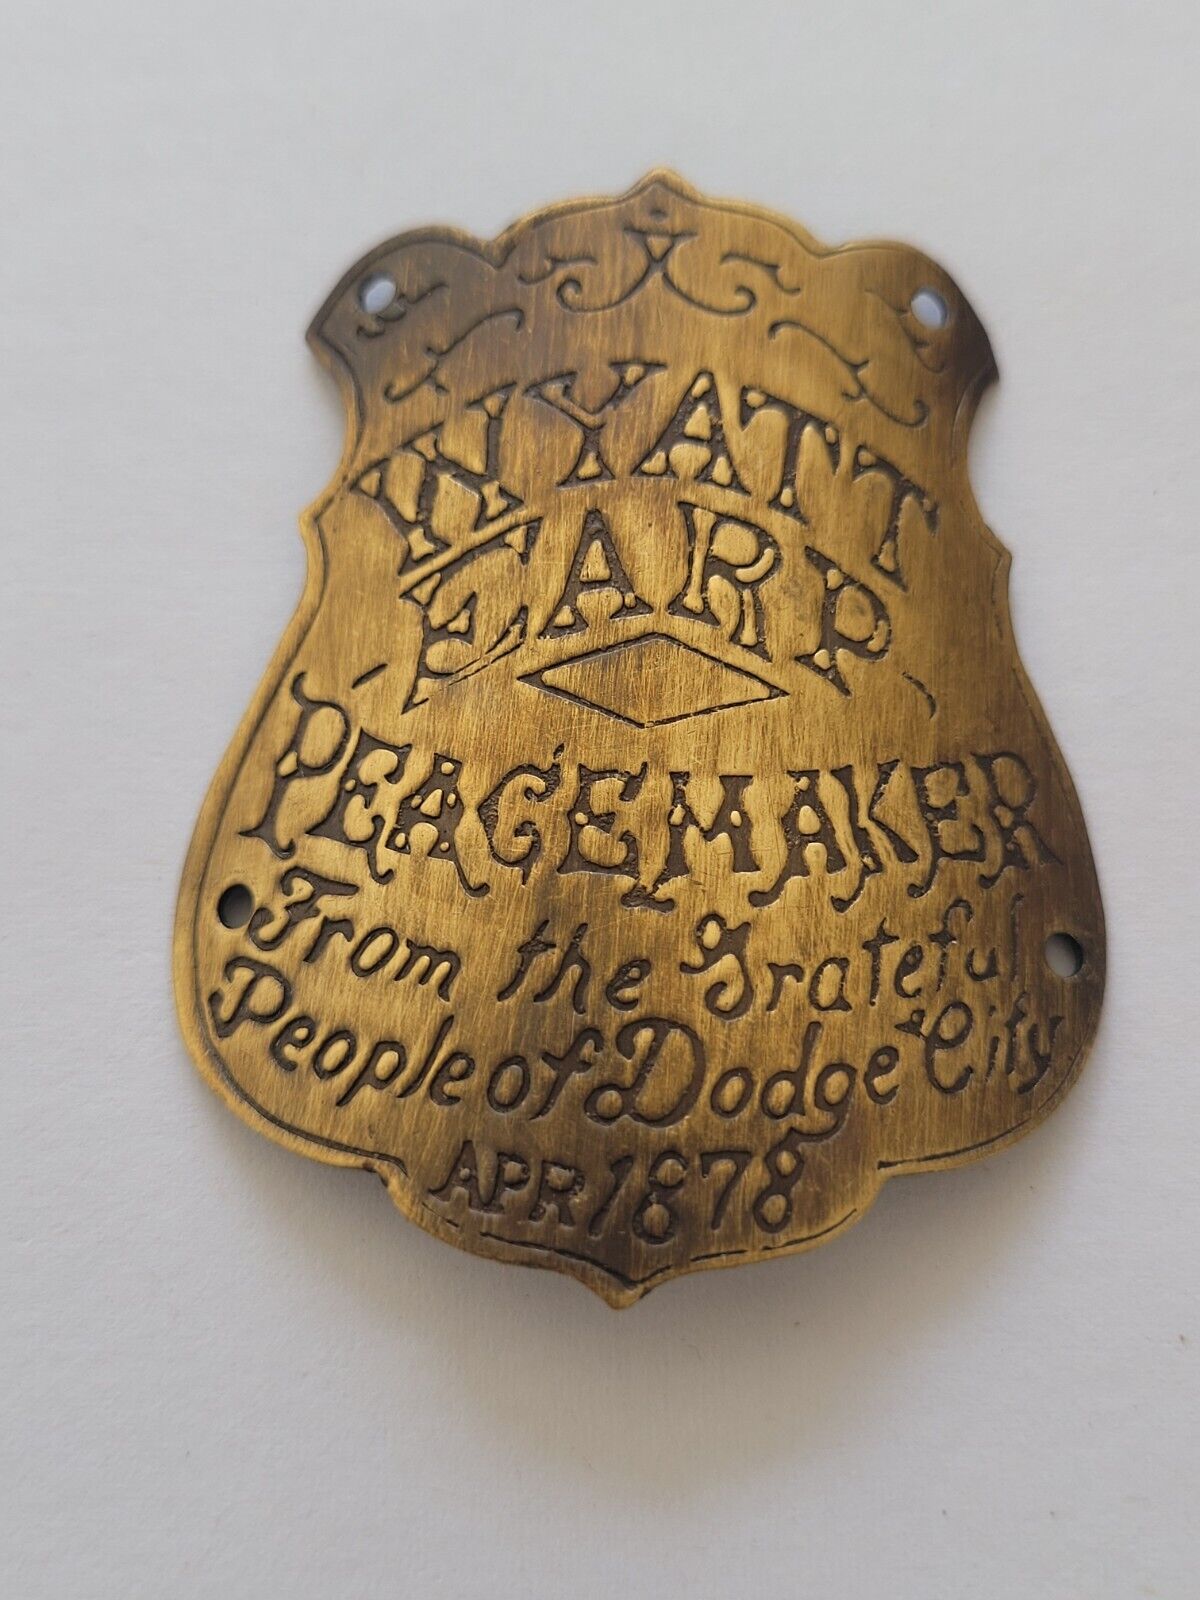 Collectable Brass Wyatt Earp Peacemaker Dodge City 1878 Gun Butt Tag Badge